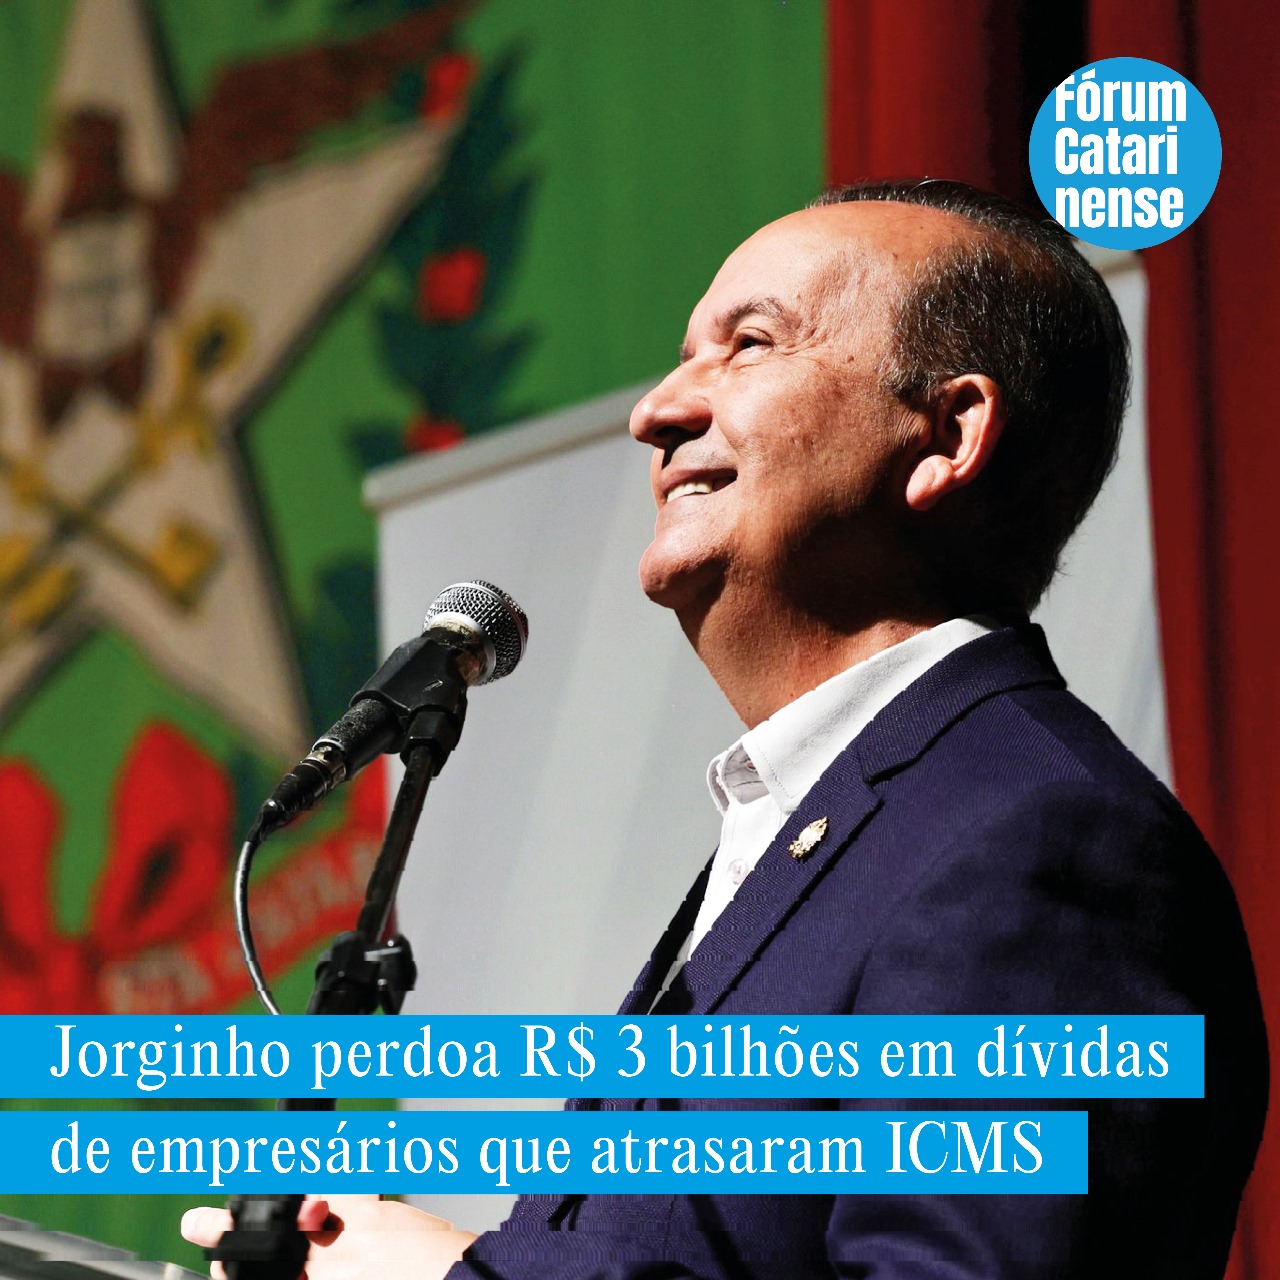 Jorginho Mello perdoa R$ 3 bilhões em dívidas de empresários que atrasam ICMS